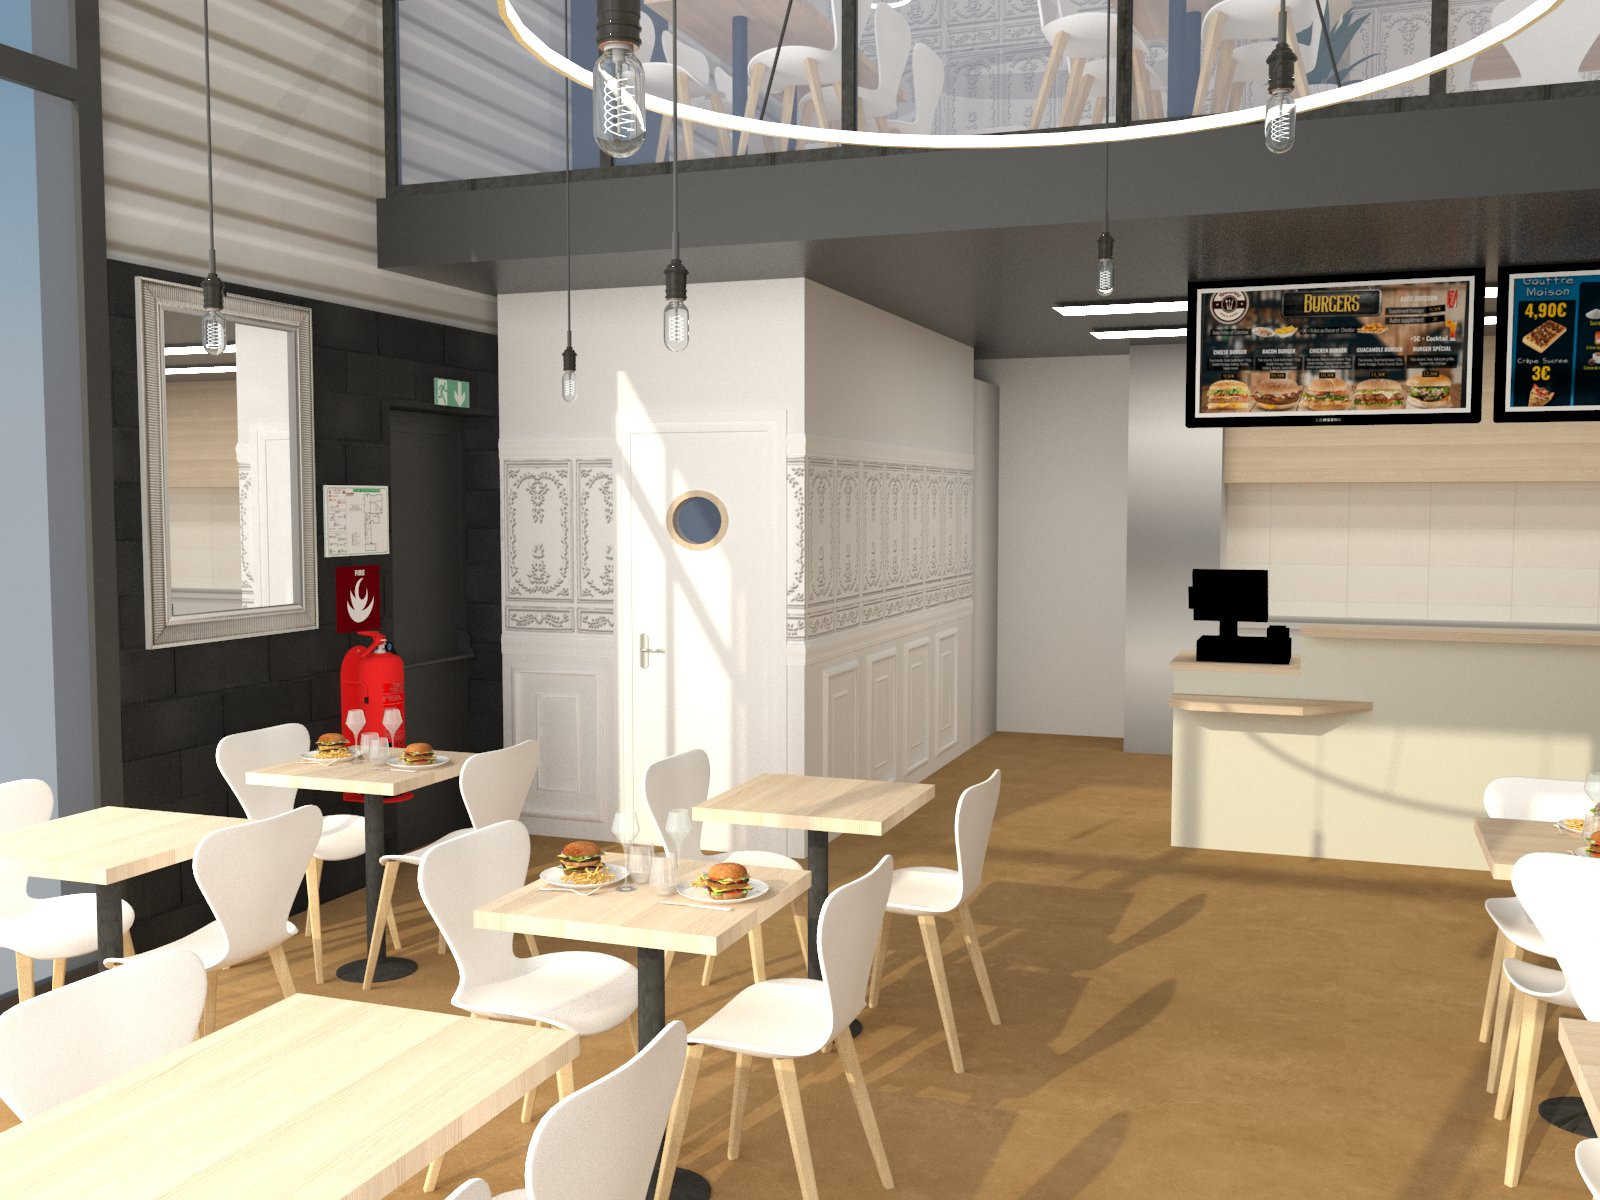 Sorbiers - Transformer un dépôt en un restaurant tendance